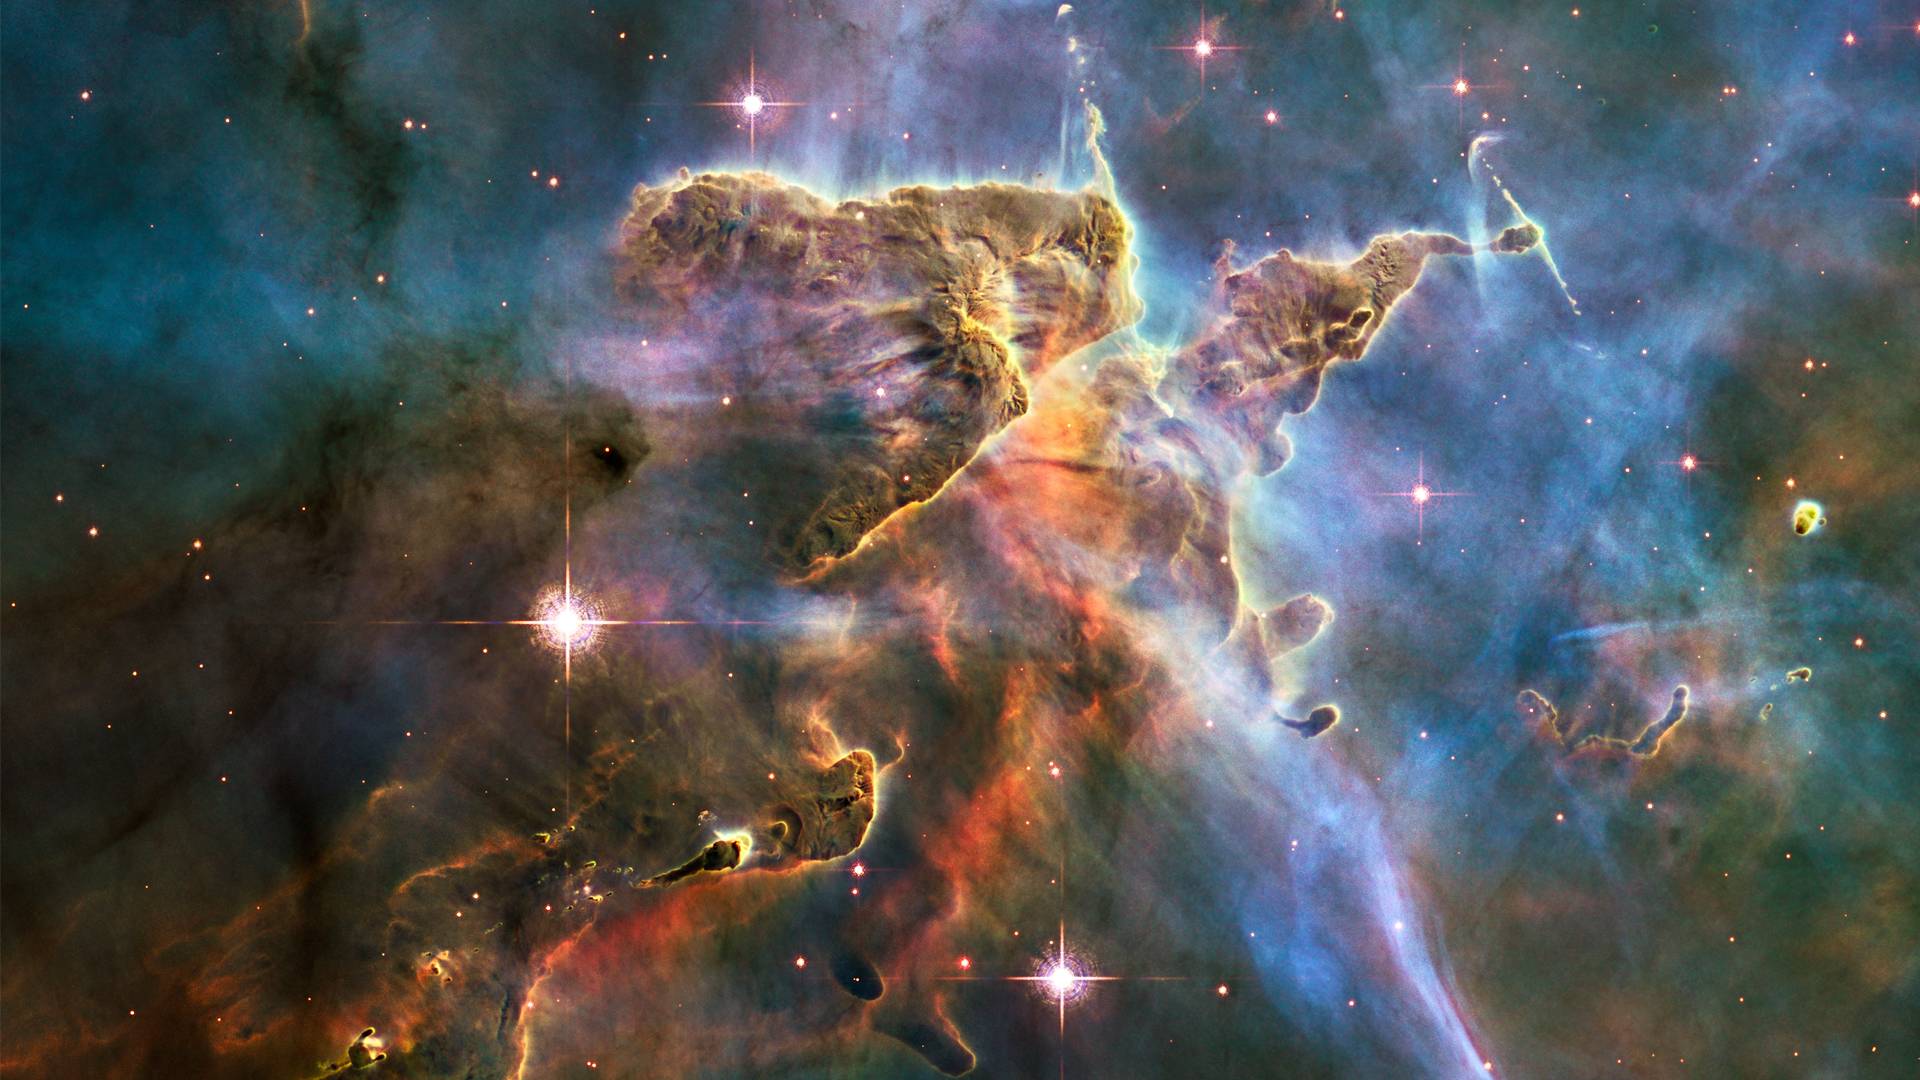 Nebula HD Wallpaper 1920x1080